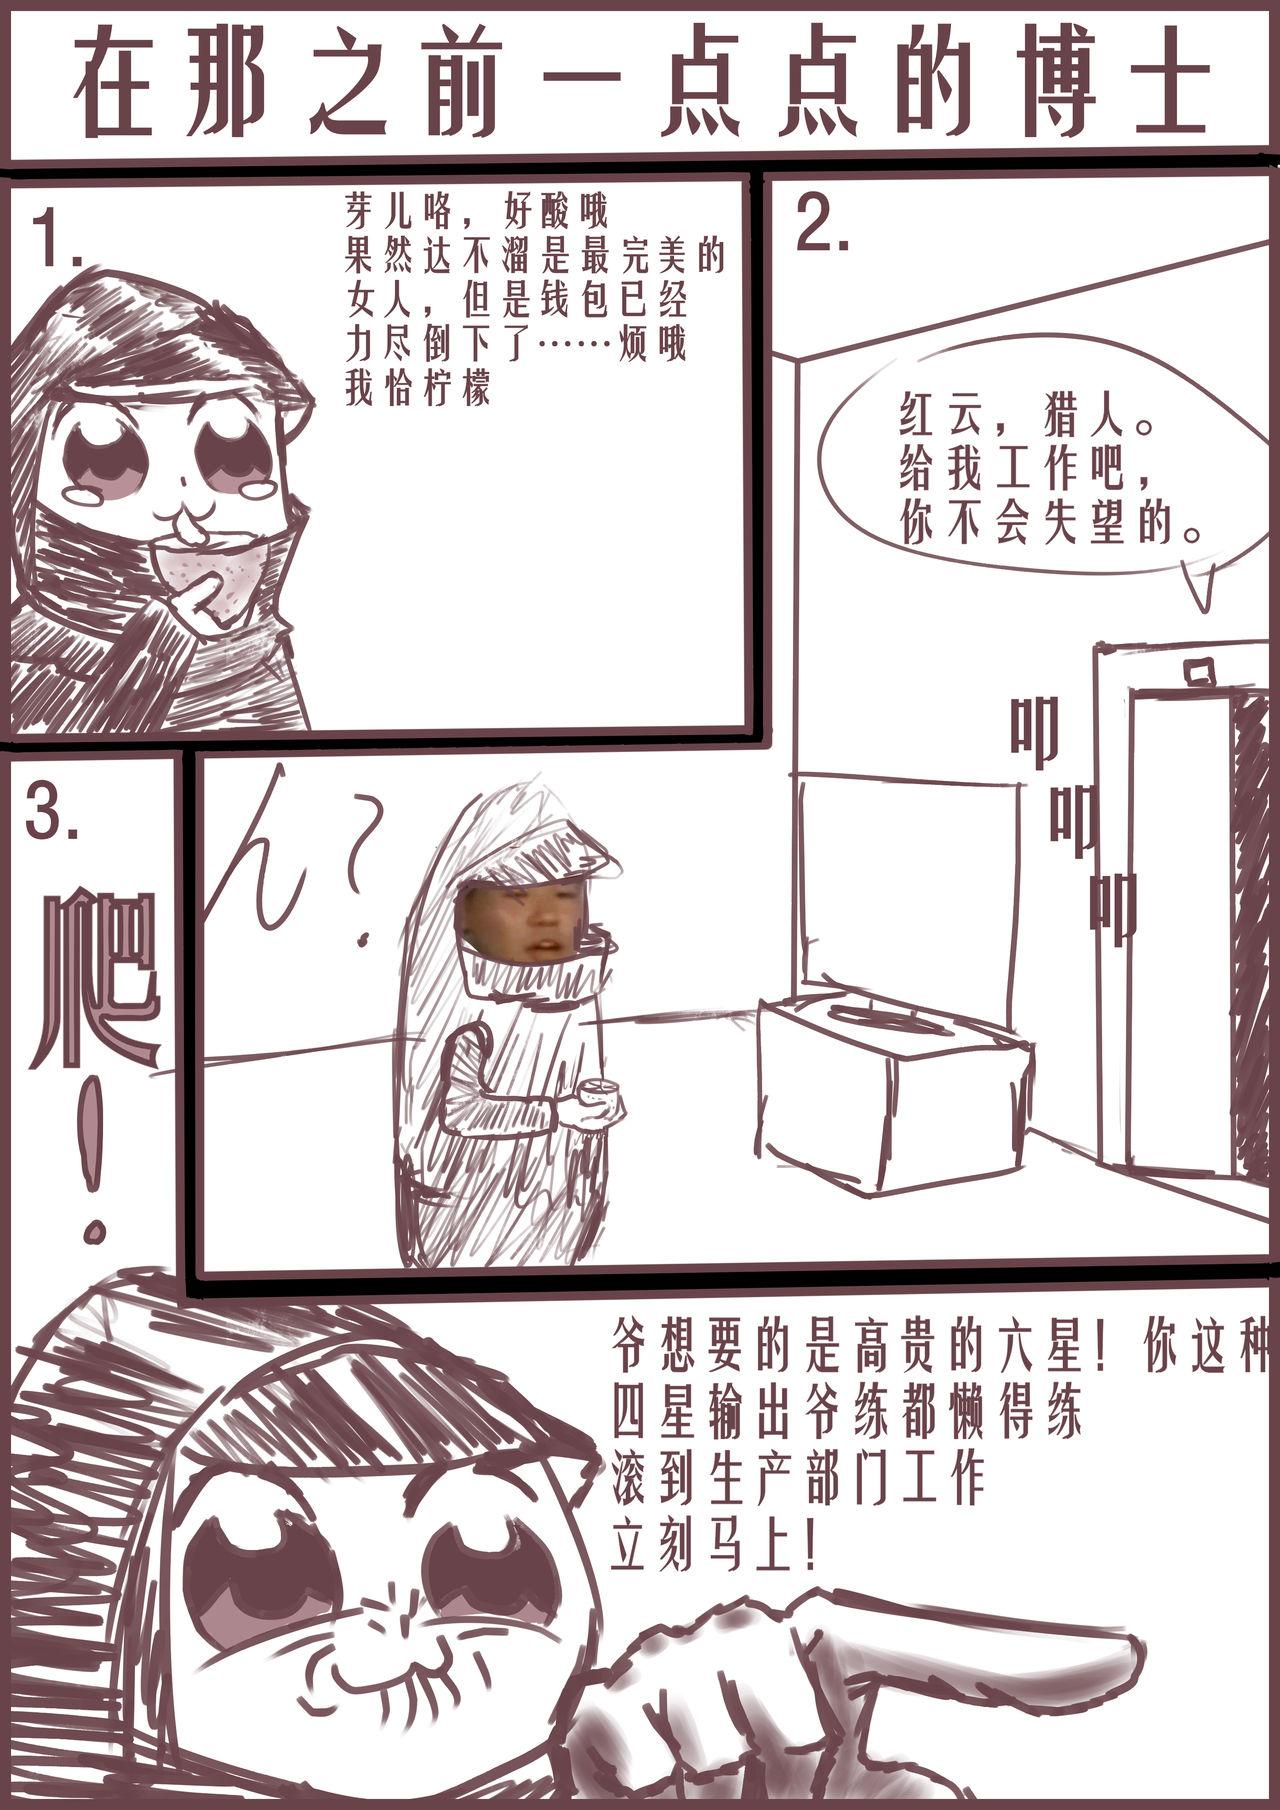 Wank 【Arknights】Sideroca&Vermeil  suffering - Arknights Manatsu no yo no inmu Nurse - Page 8